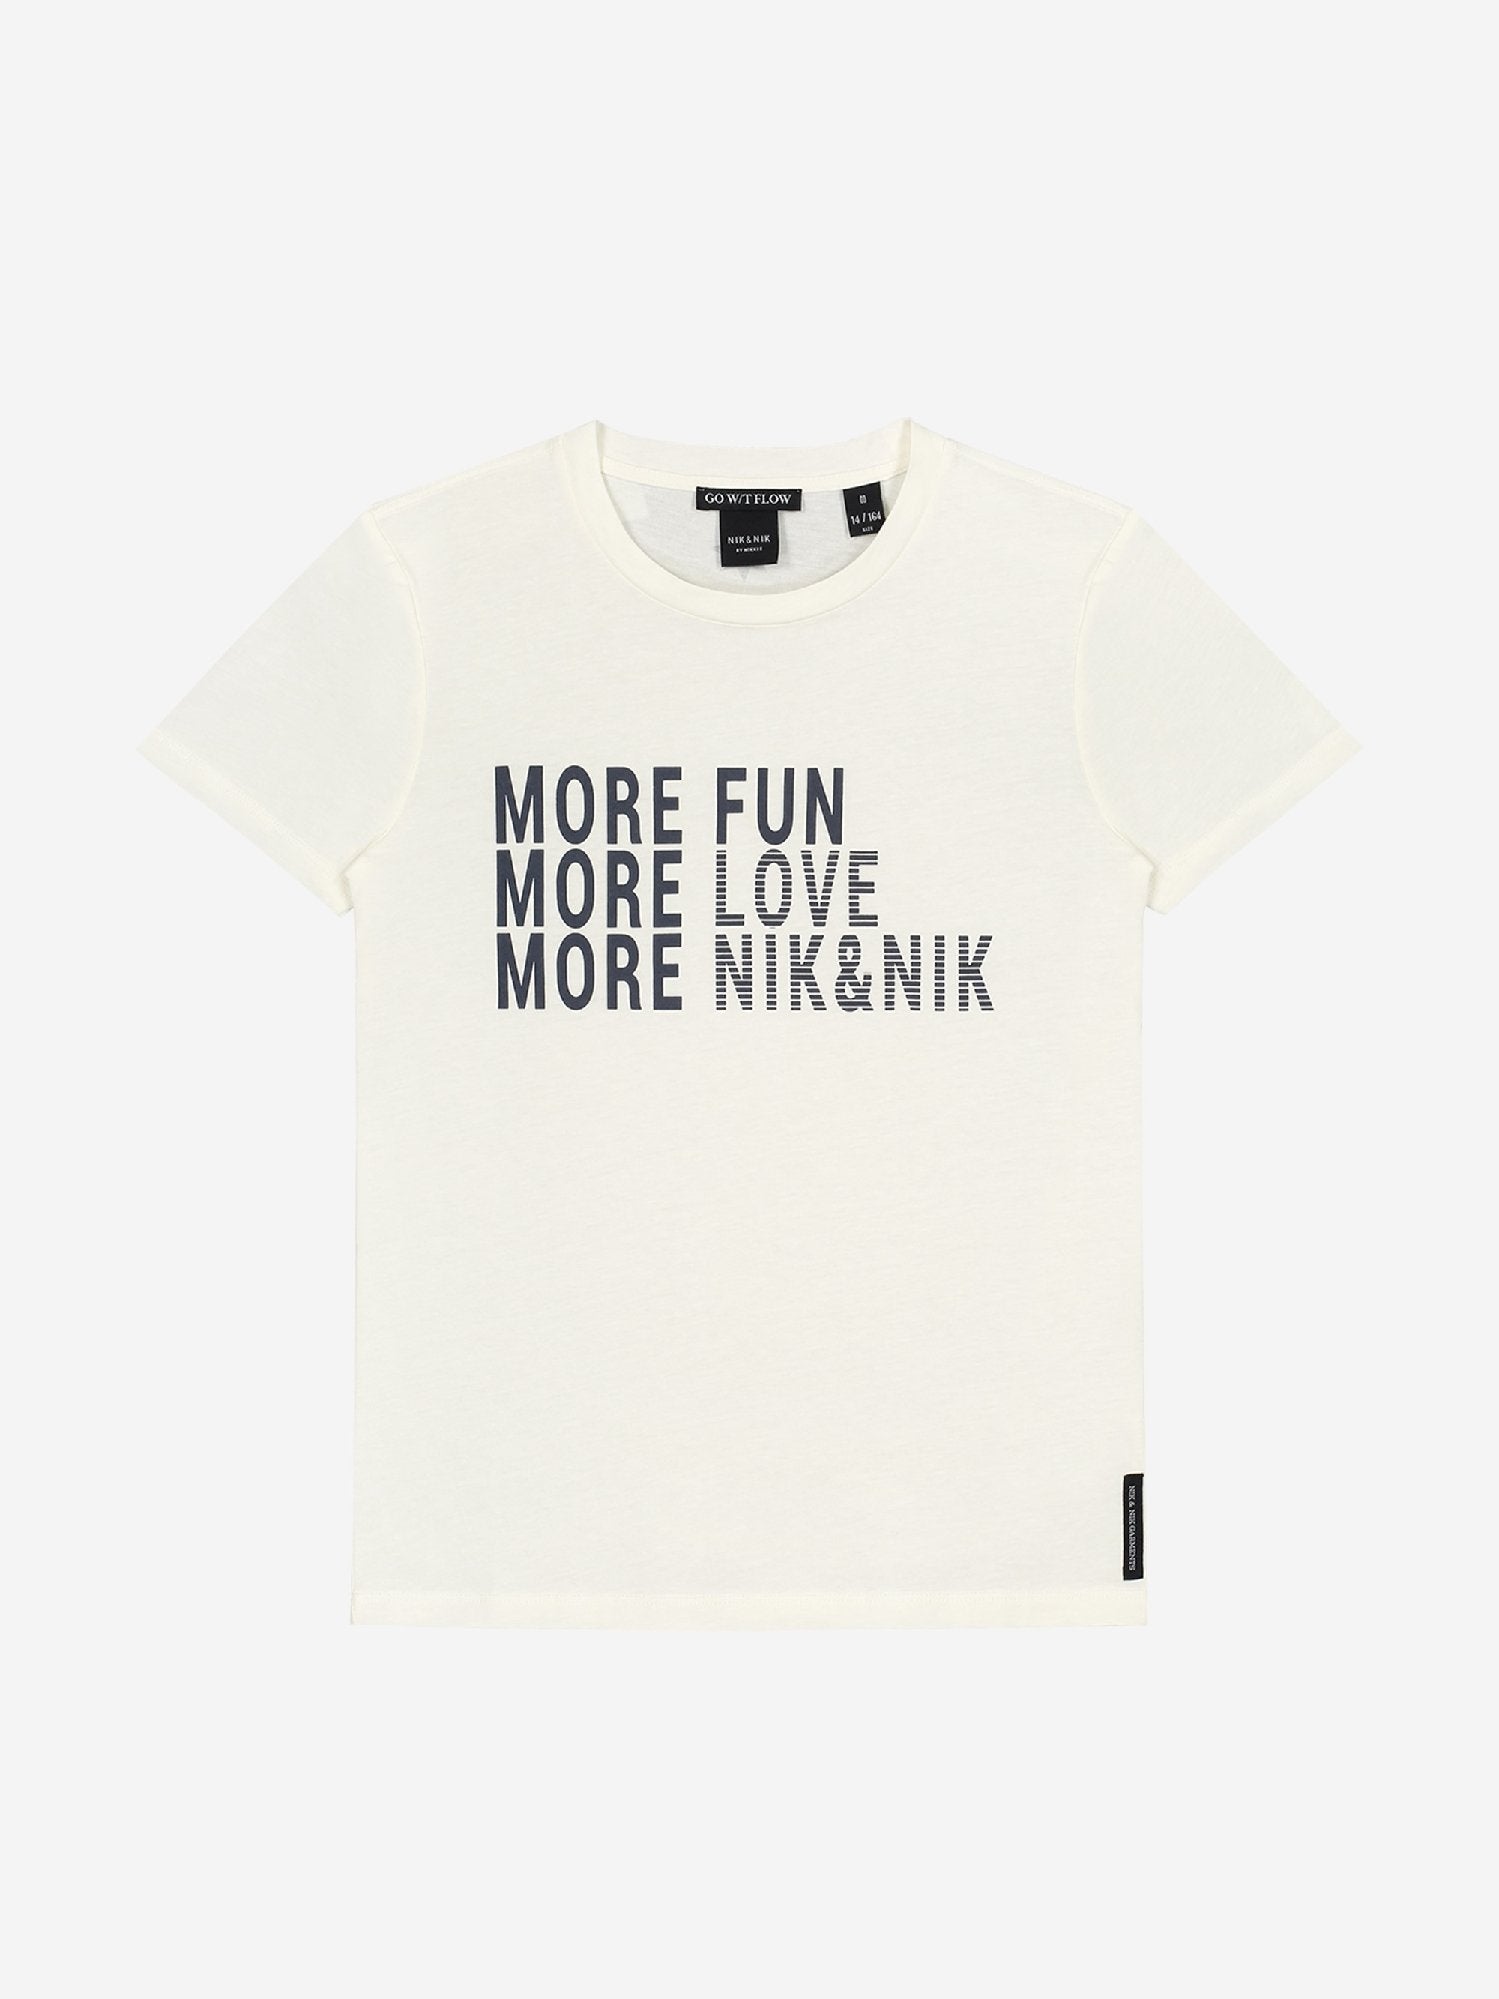 Meisjes Fun T-shirt van Nik & Nik in de kleur Off White in maat 176.